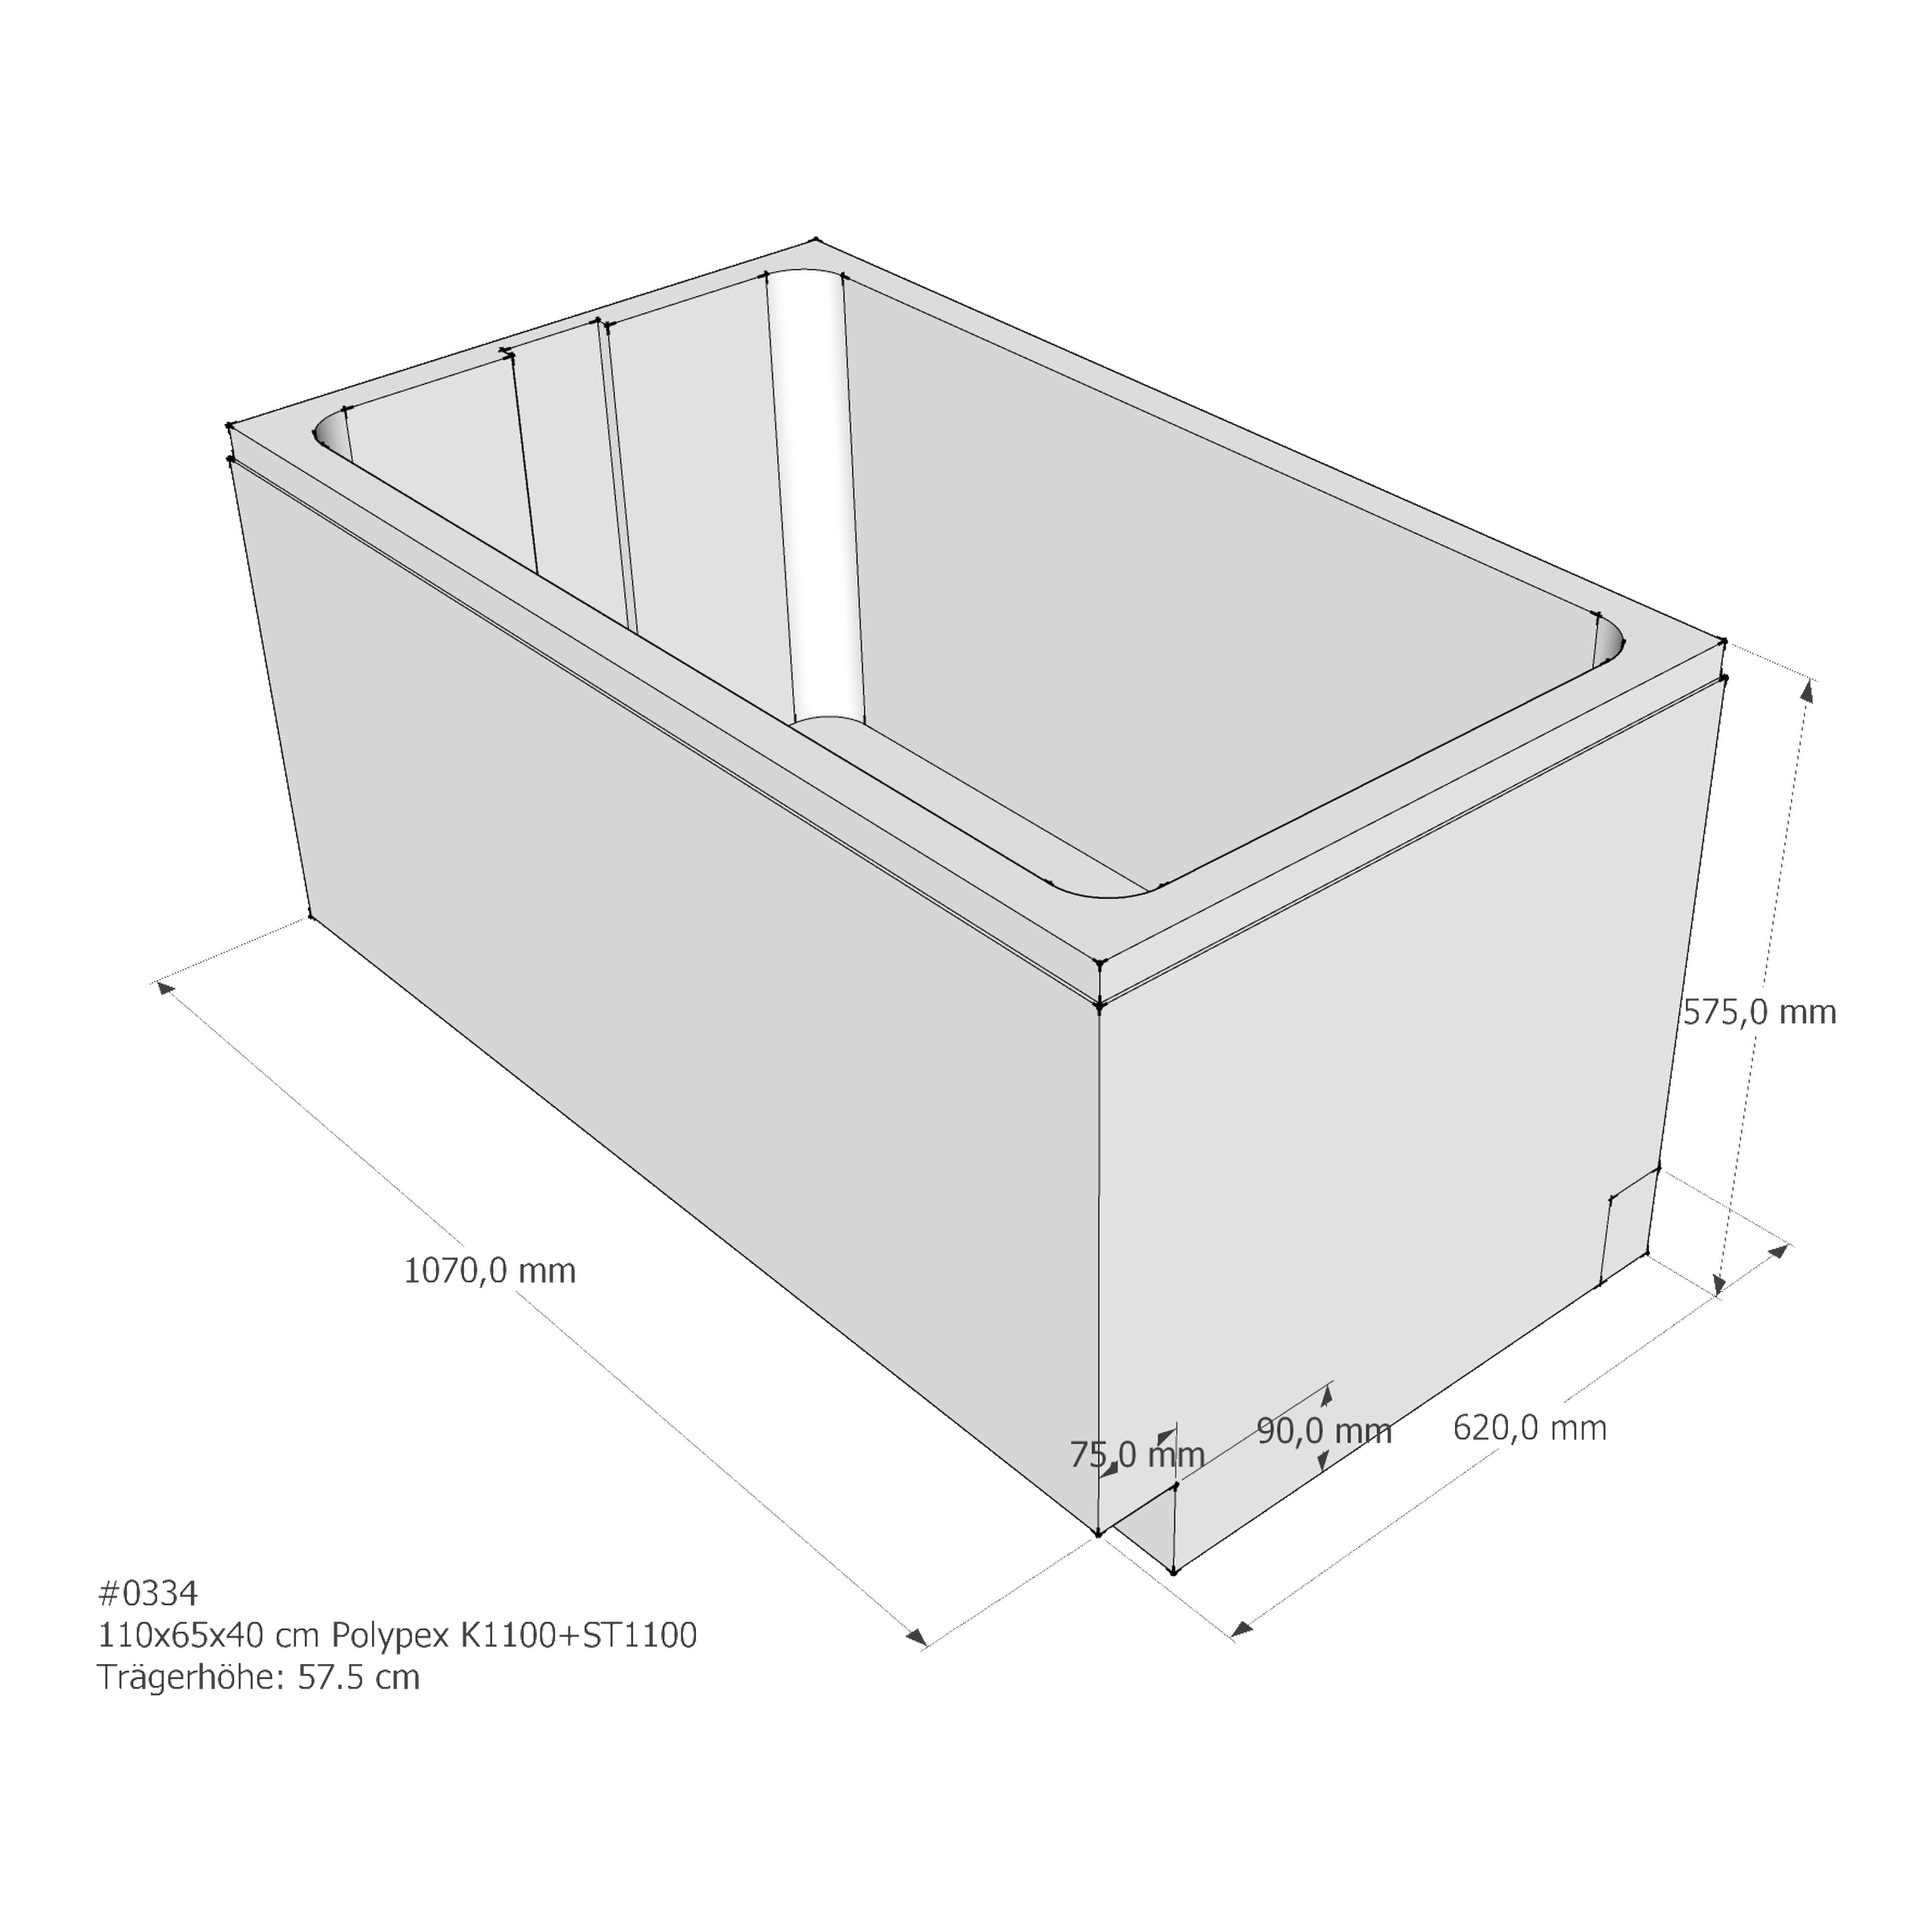 Badewannenträger für Polypex K1100+ST1100 110 × 65 × 40 cm